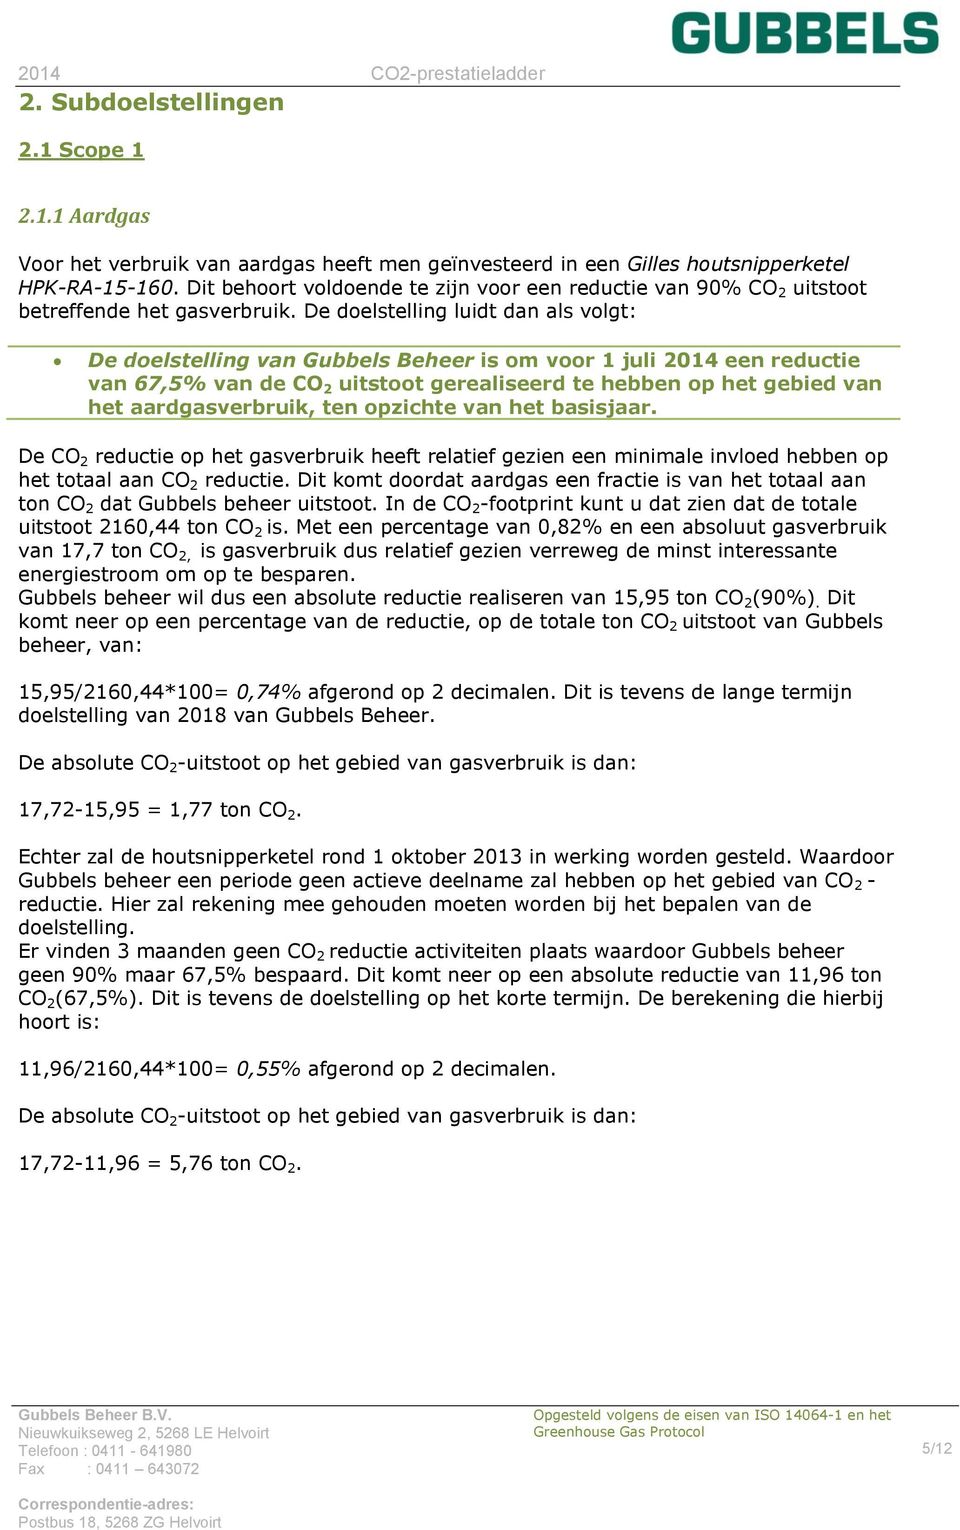 De doelstelling luidt dan als volgt: De doelstelling van Gubbels Beheer is om voor 1 juli 2014 een reductie van 67,5% van de CO 2 uitstoot gerealiseerd te hebben op het gebied van het